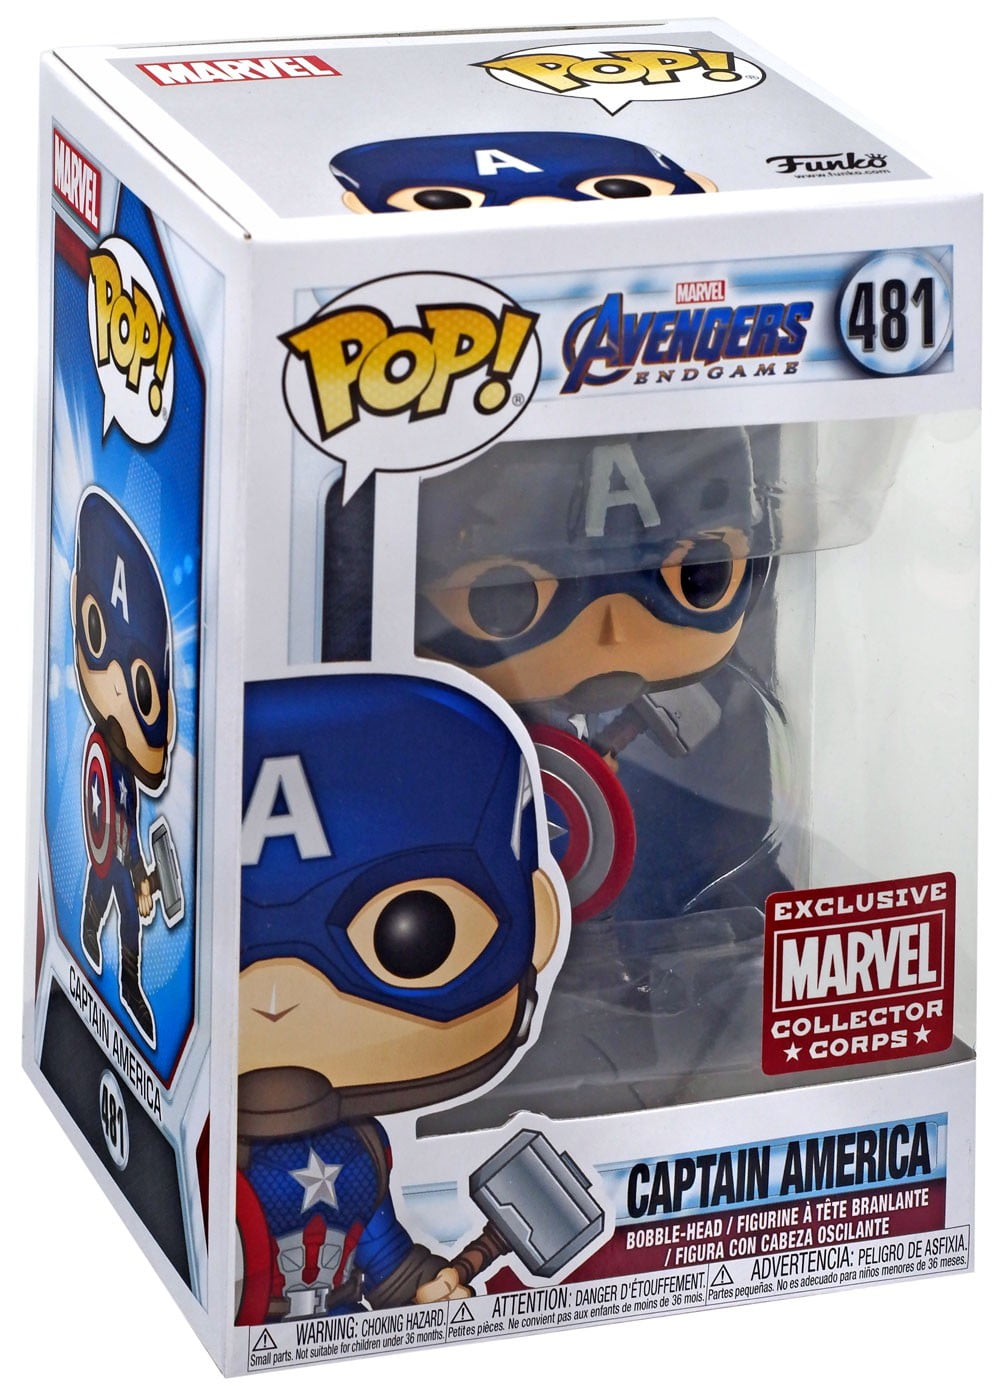 Venomized Captain America Bobble-Head Item #32686 Funko Pop Marvel Venom 